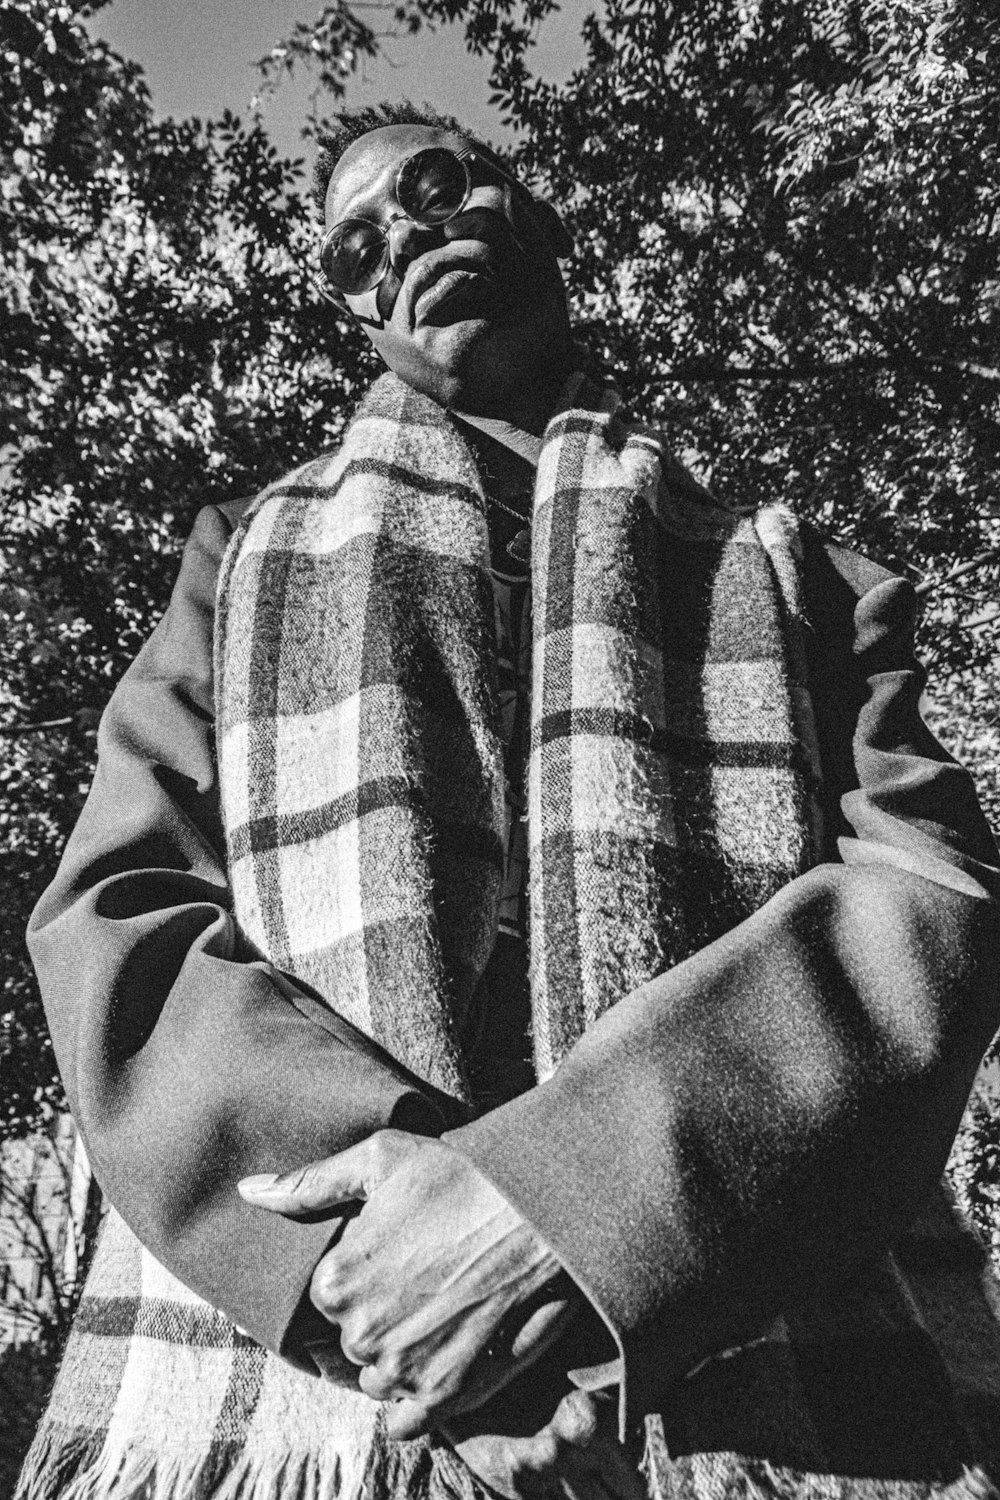 fotografia in scala di grigi di uomo che indossa cappotto e sciarpa